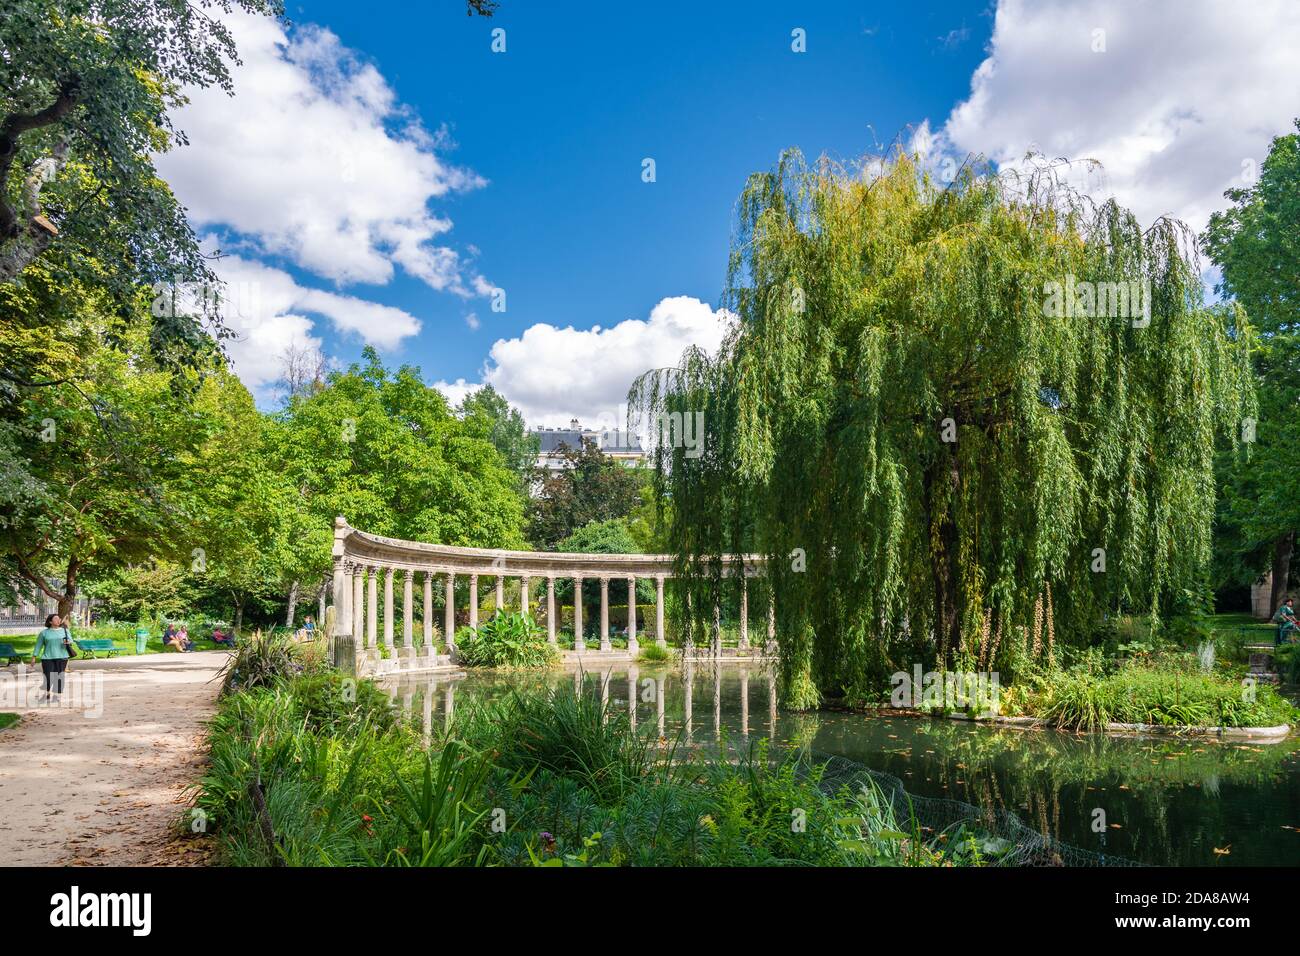 Paris, France - 29 août 2019 : le Parc Monceau est un parc public situé dans le 8ème arrondissement de Paris. A l'entrée principale se trouve une rotonde. Le pa Banque D'Images